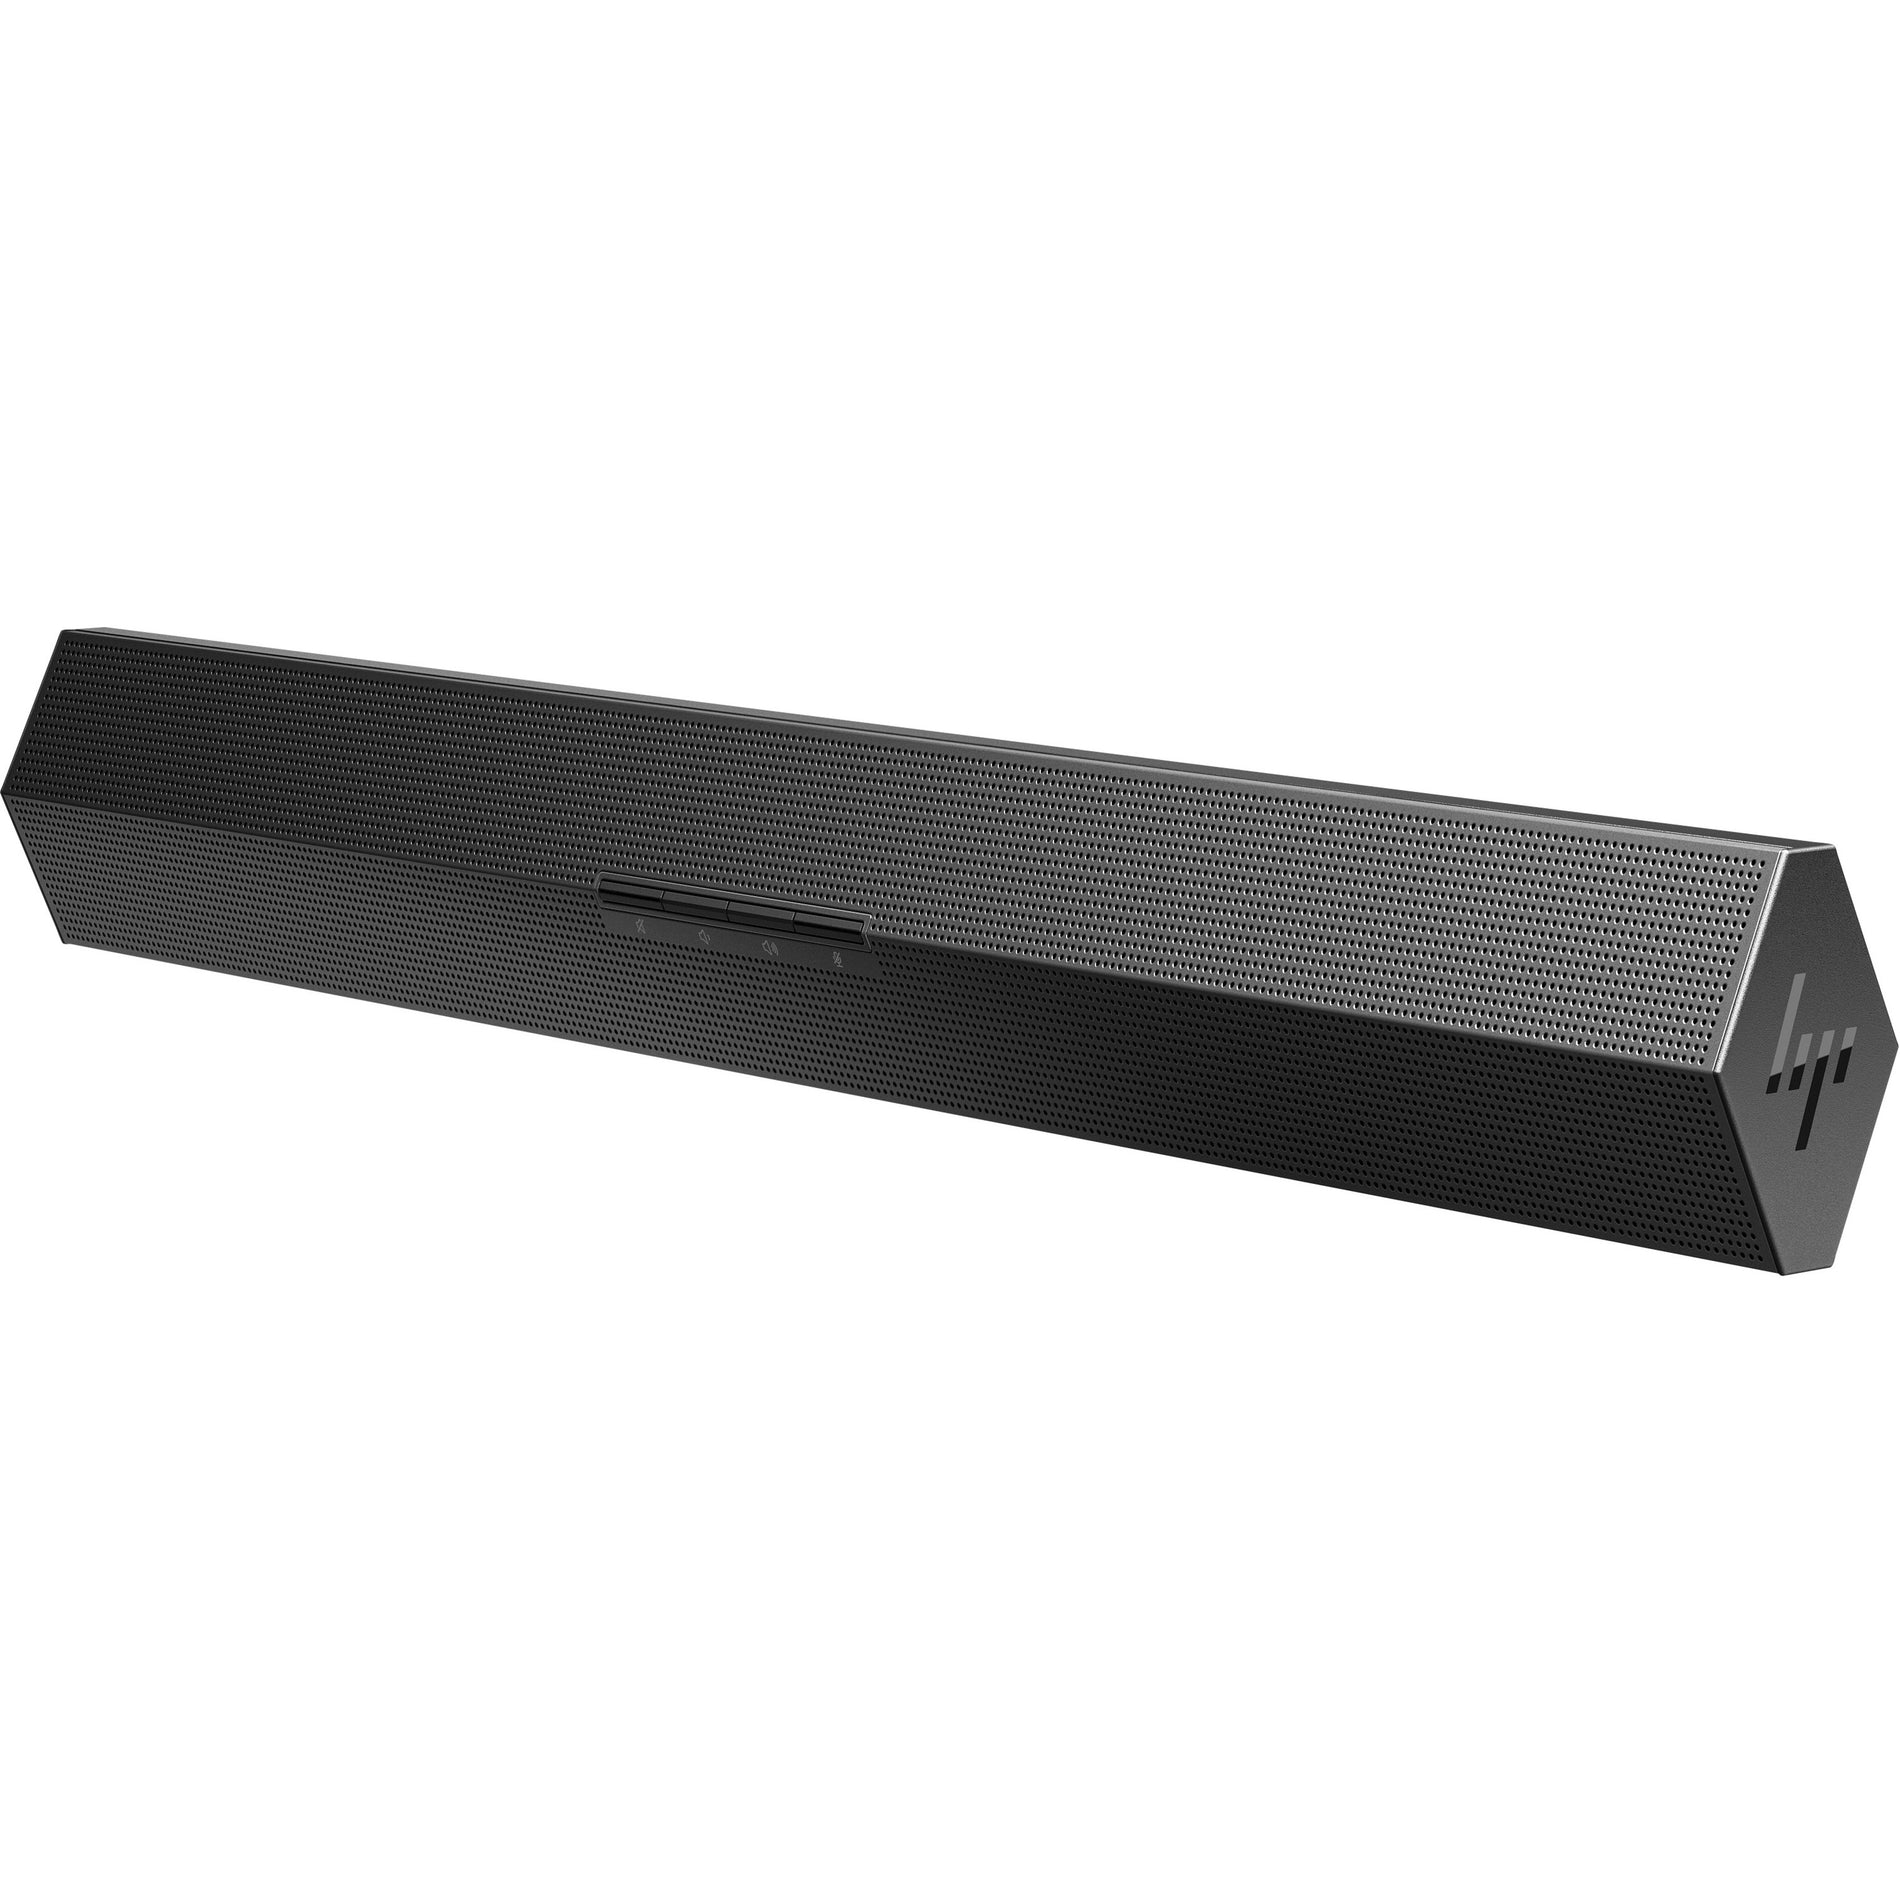 HP 32C42AA Z G3 Conferencing Speaker Bar, USB Sound Bar Speaker - Black, 1 Pack